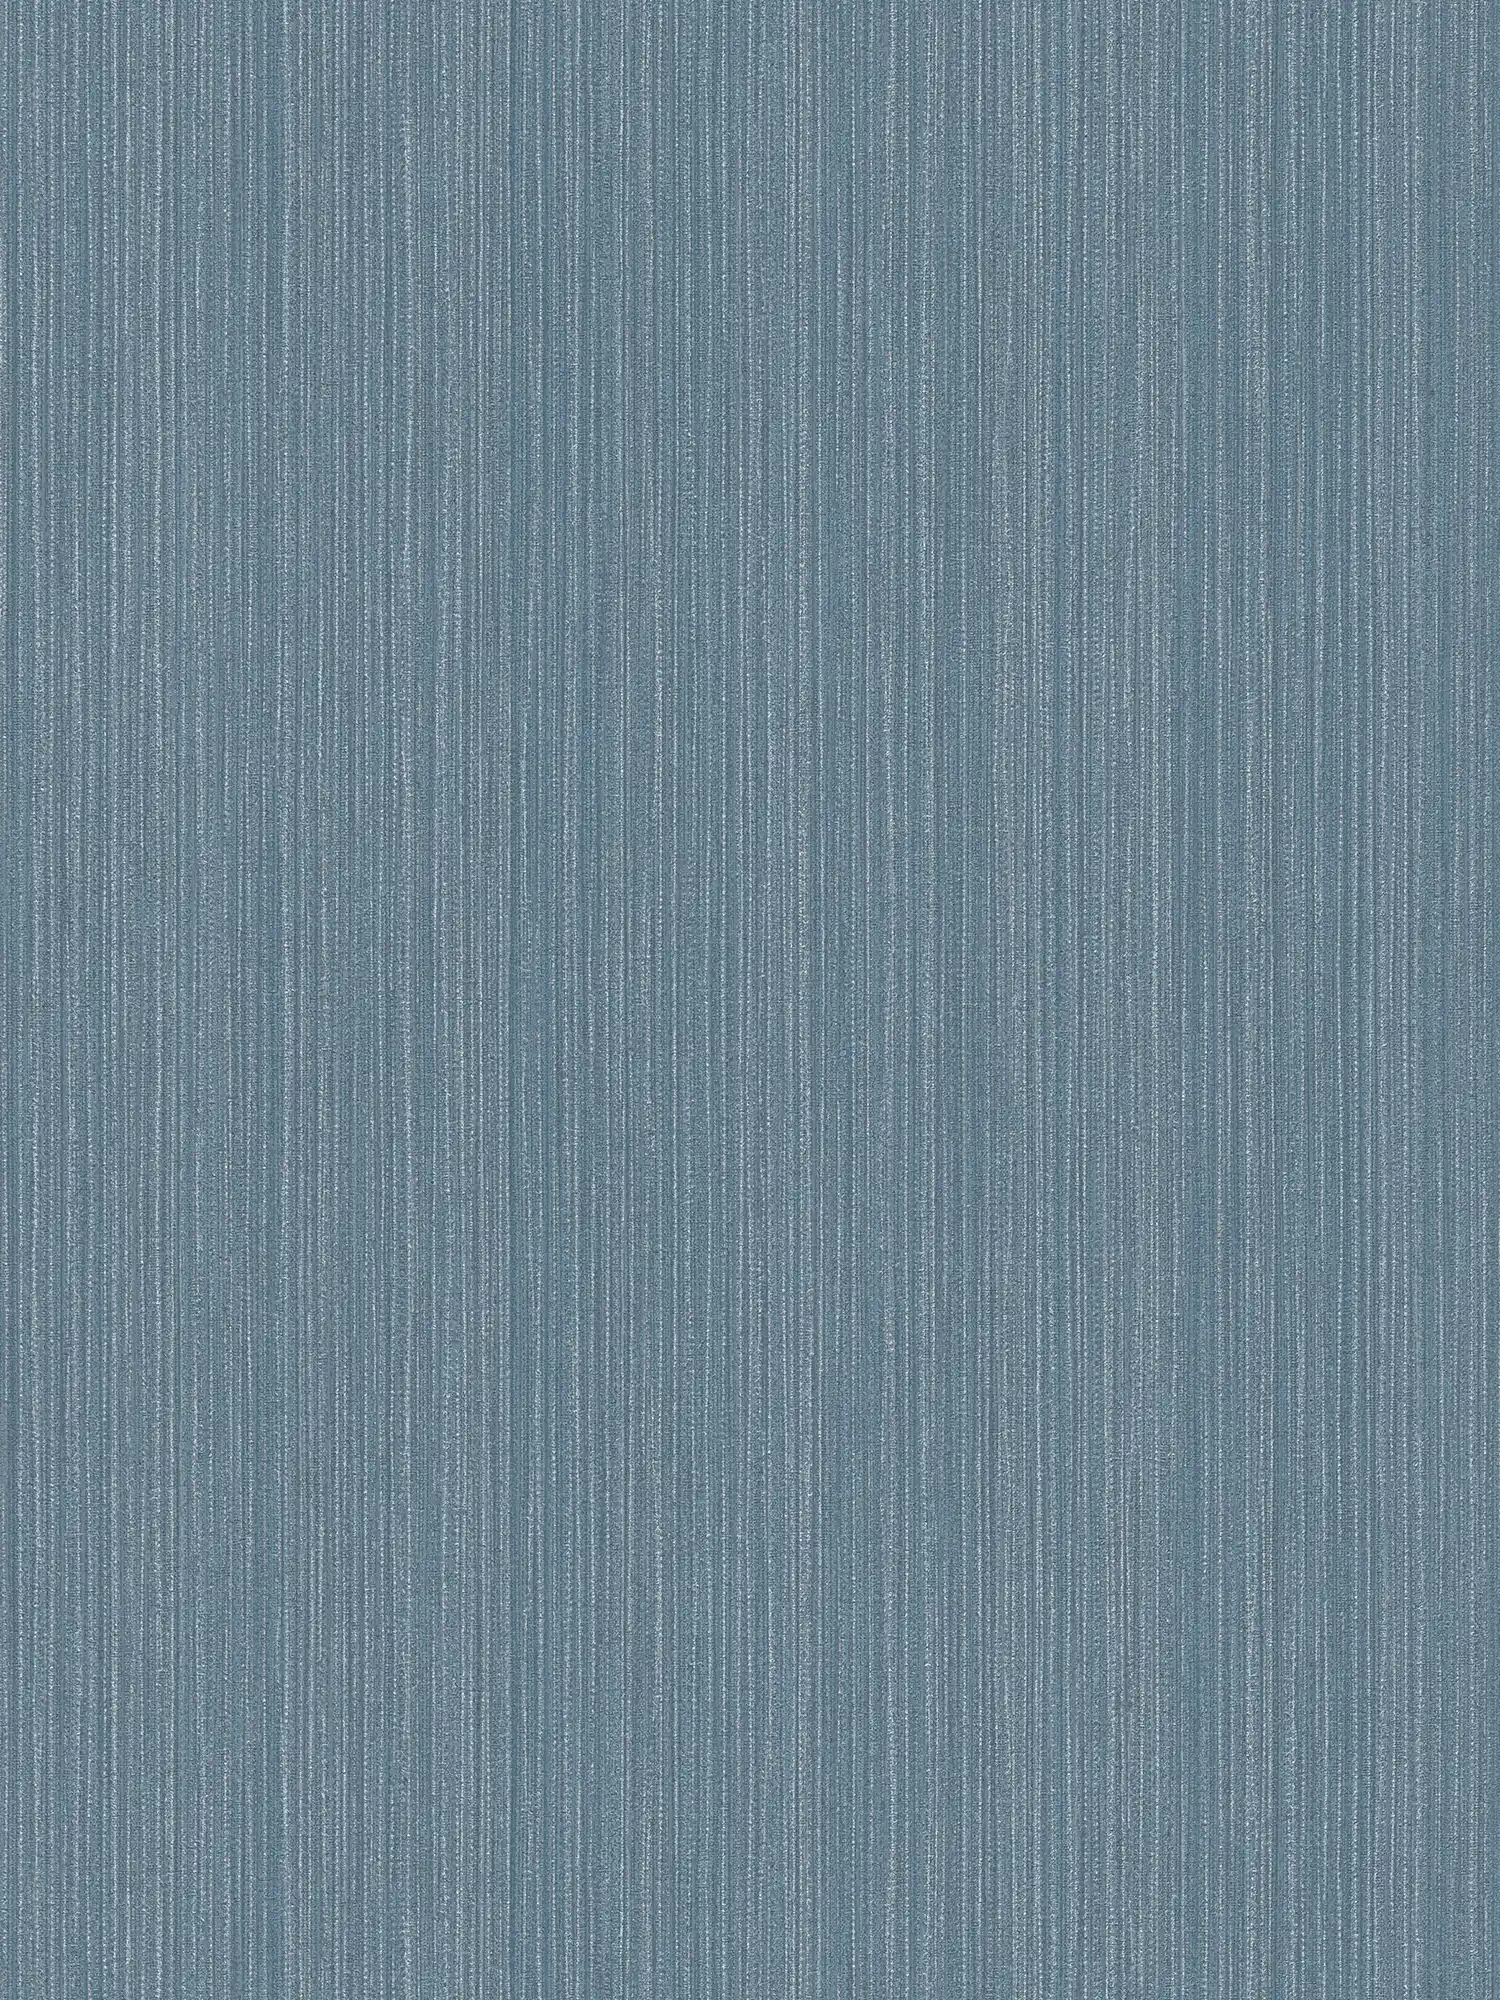 Papel pintado unitario con aspecto textil gris-azul - azul, metálico
